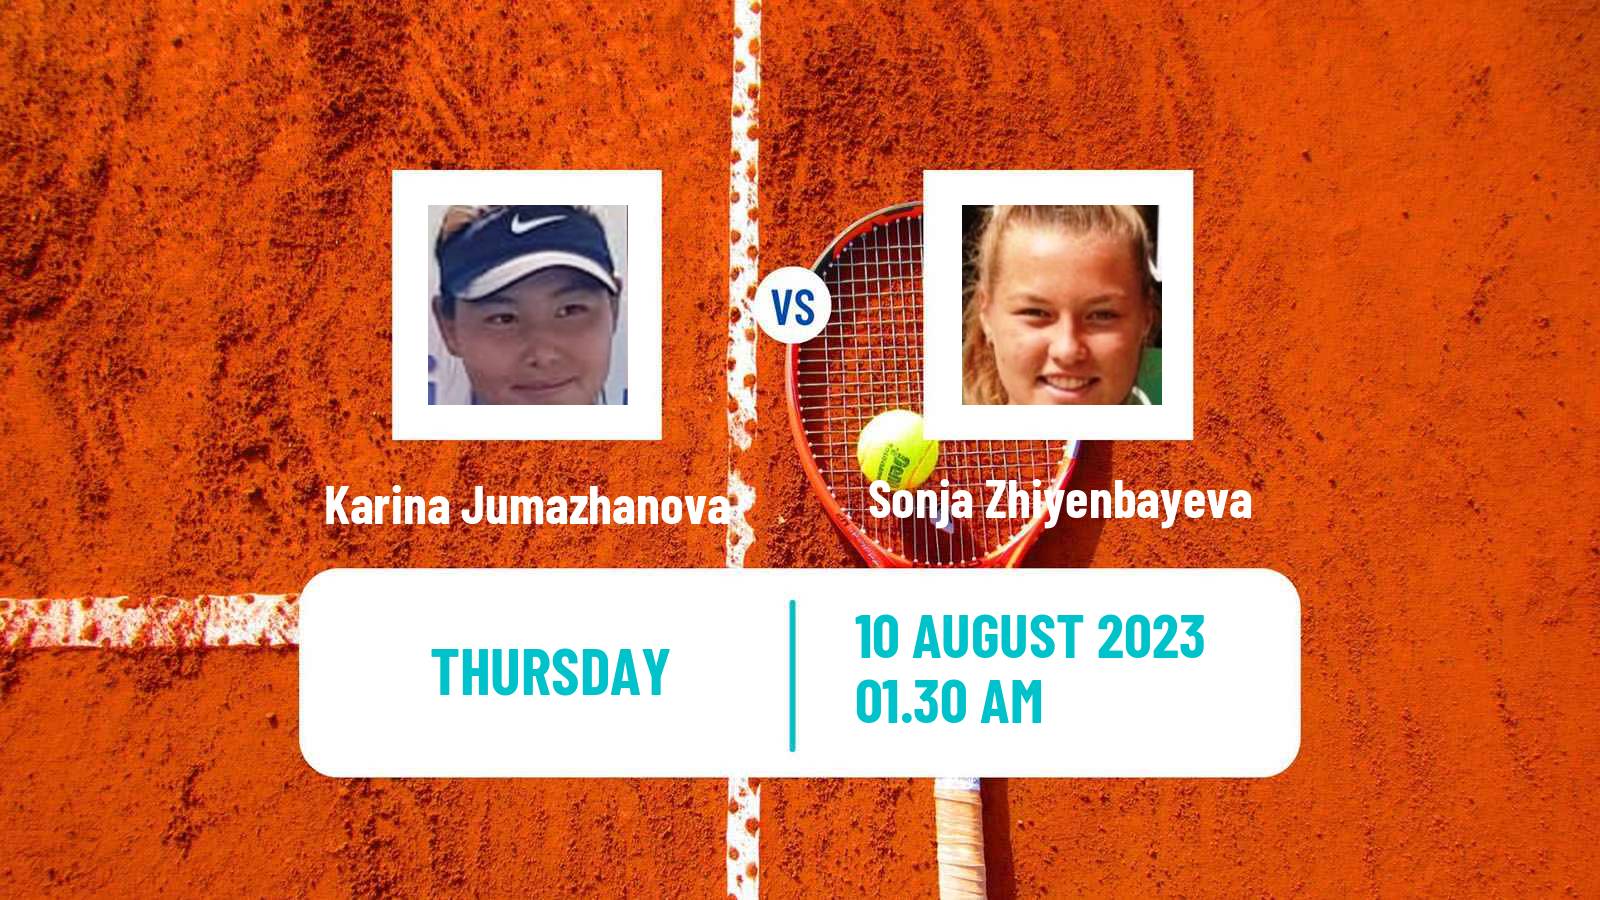 Tennis ITF W15 Ust Kamenogorsk Women Karina Jumazhanova - Sonja Zhiyenbayeva